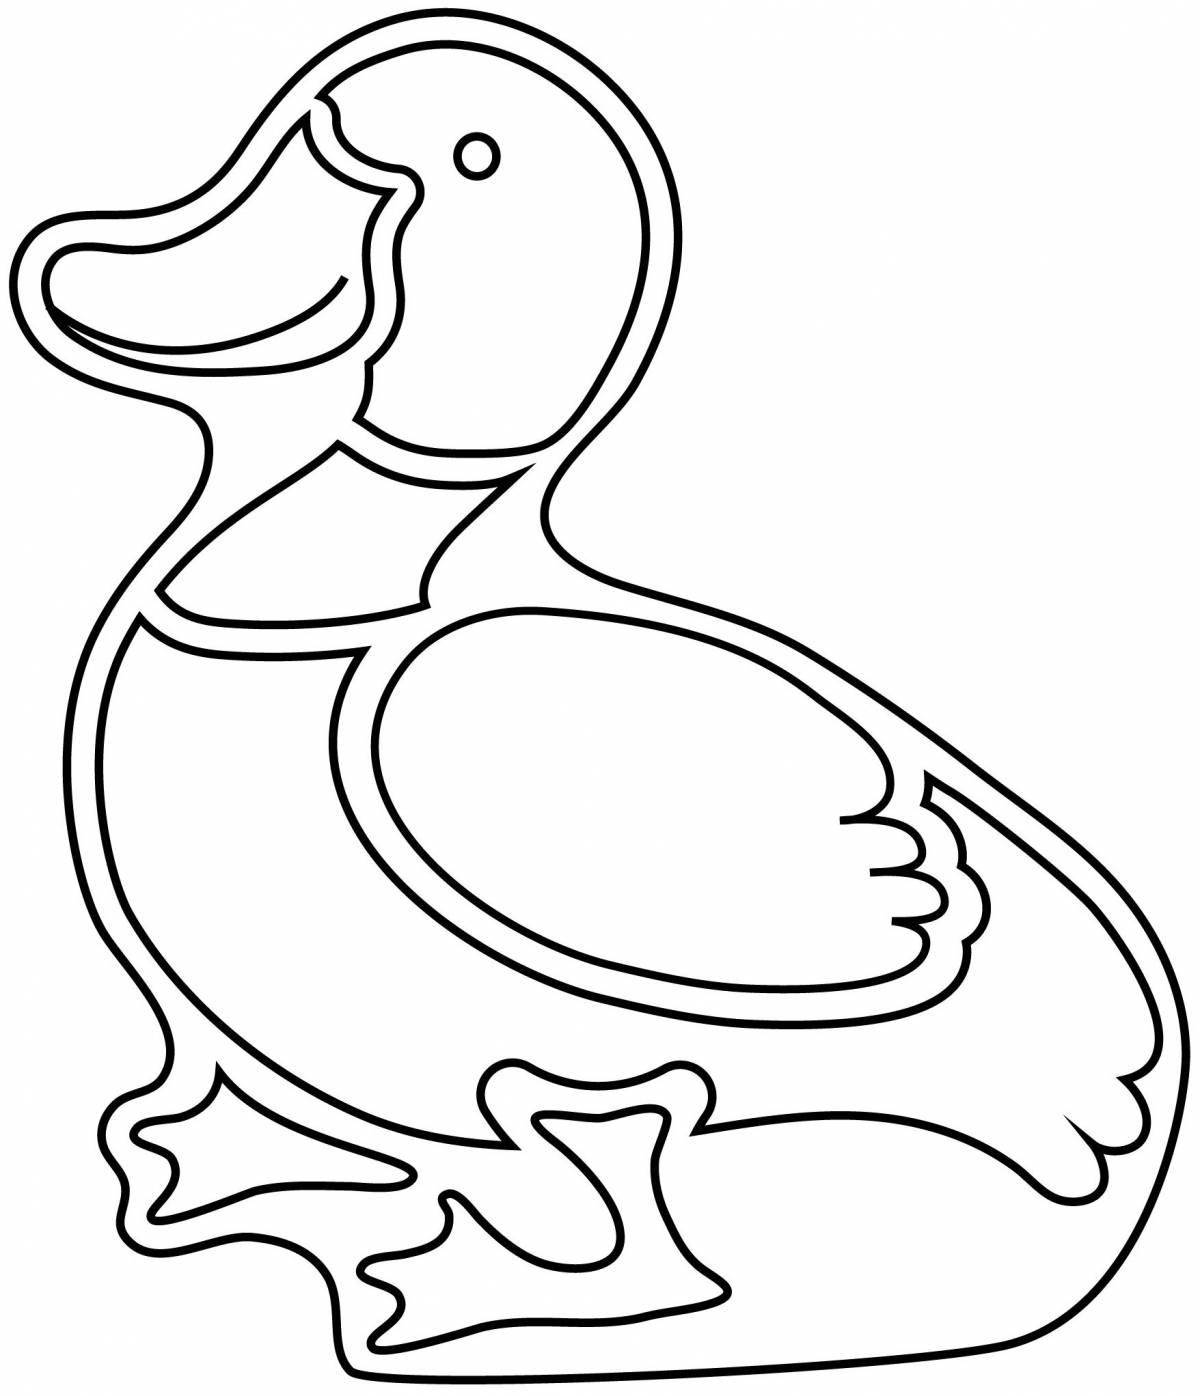 Раскраска утка с цветными брызгами для детей 3-4 лет